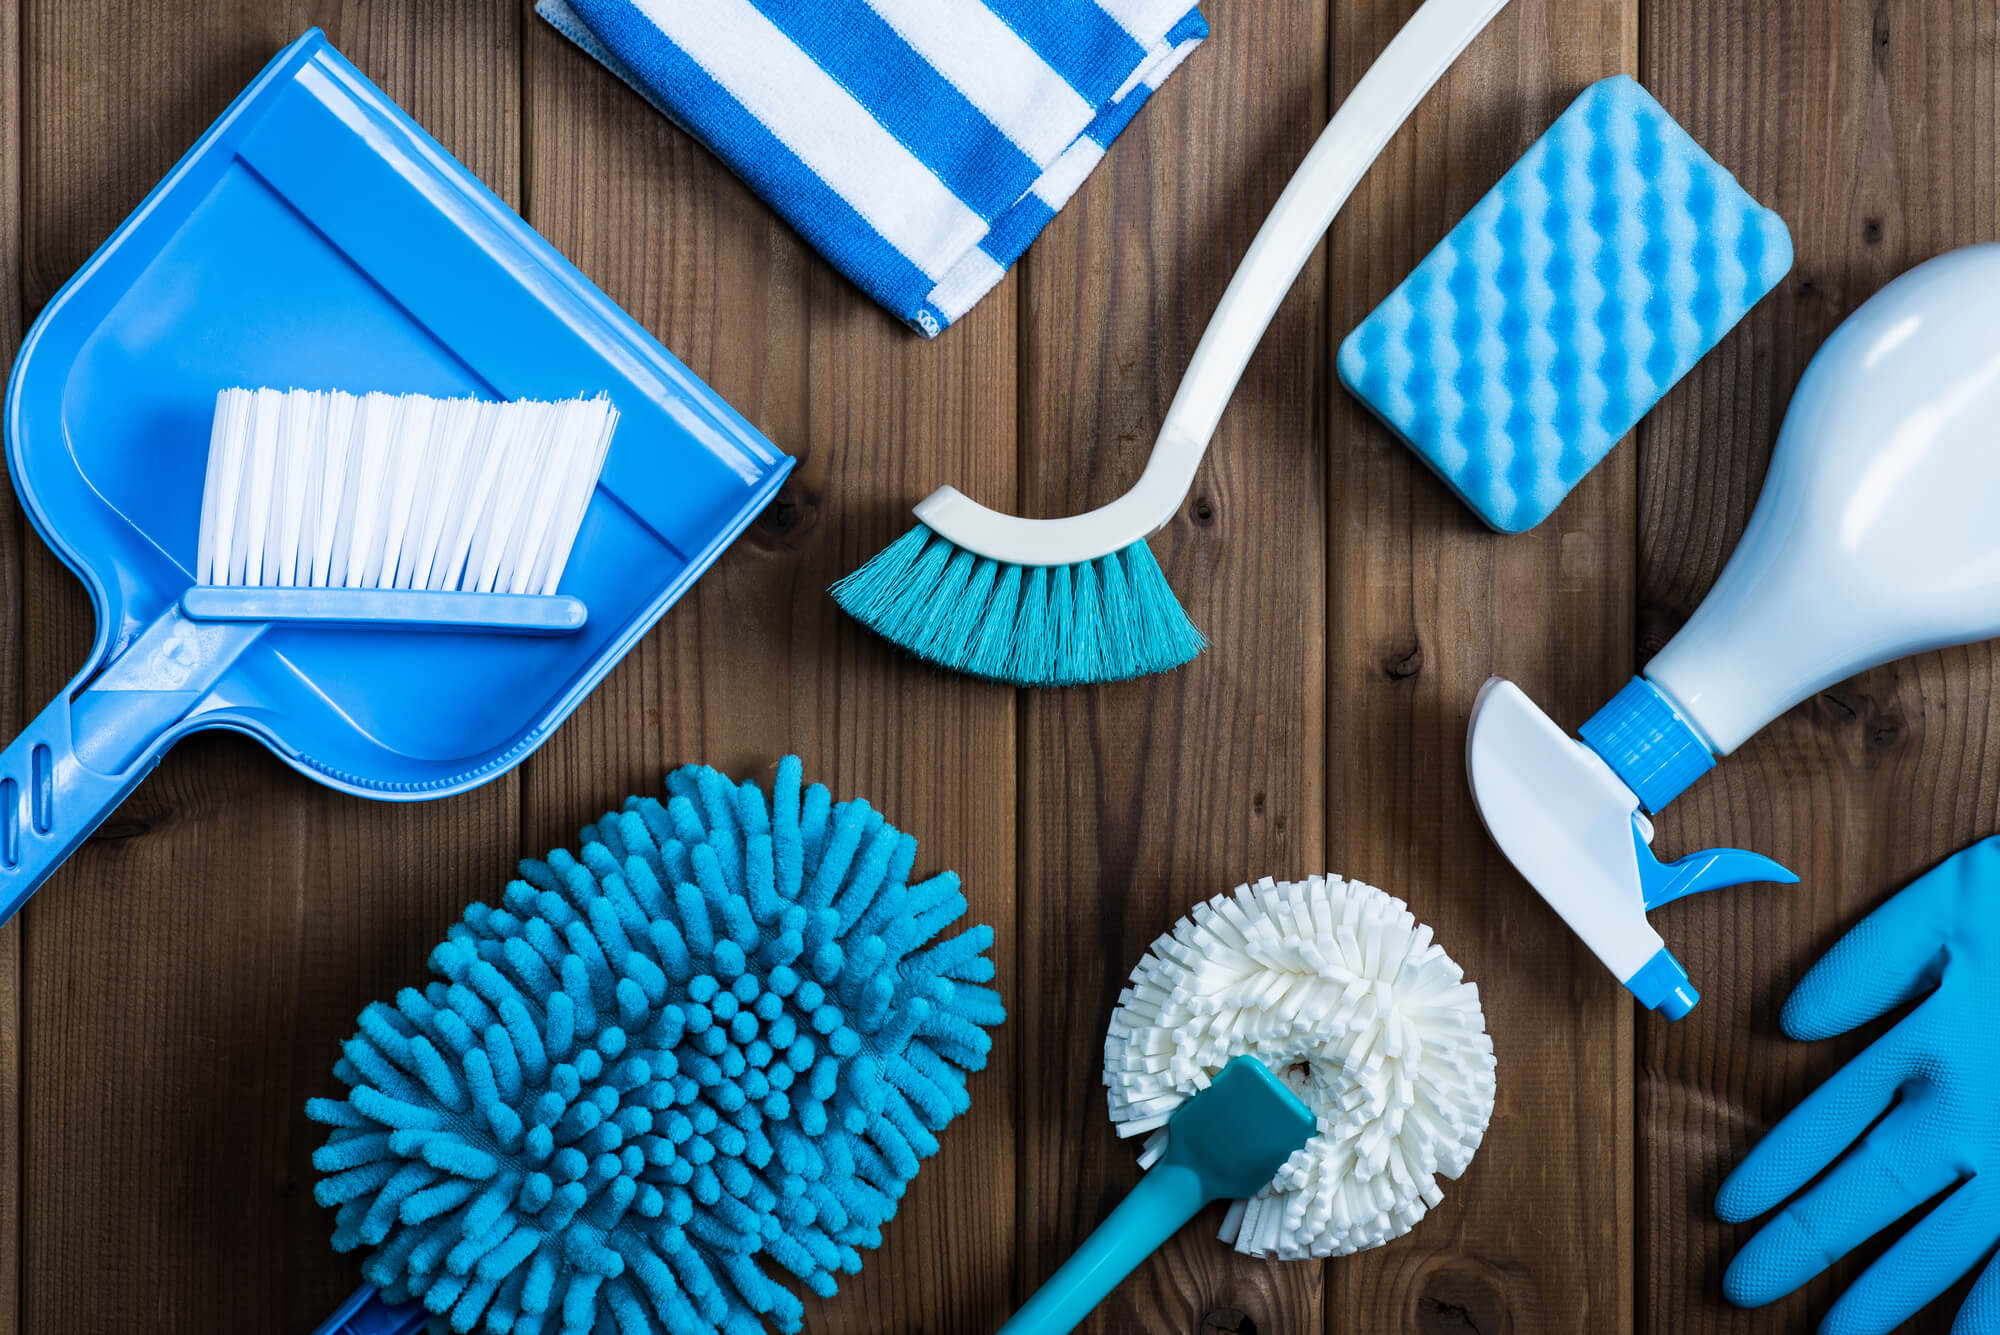 ゴミ屋敷の掃除の仕方とは？ 自分で掃除するか、業者に依頼するか